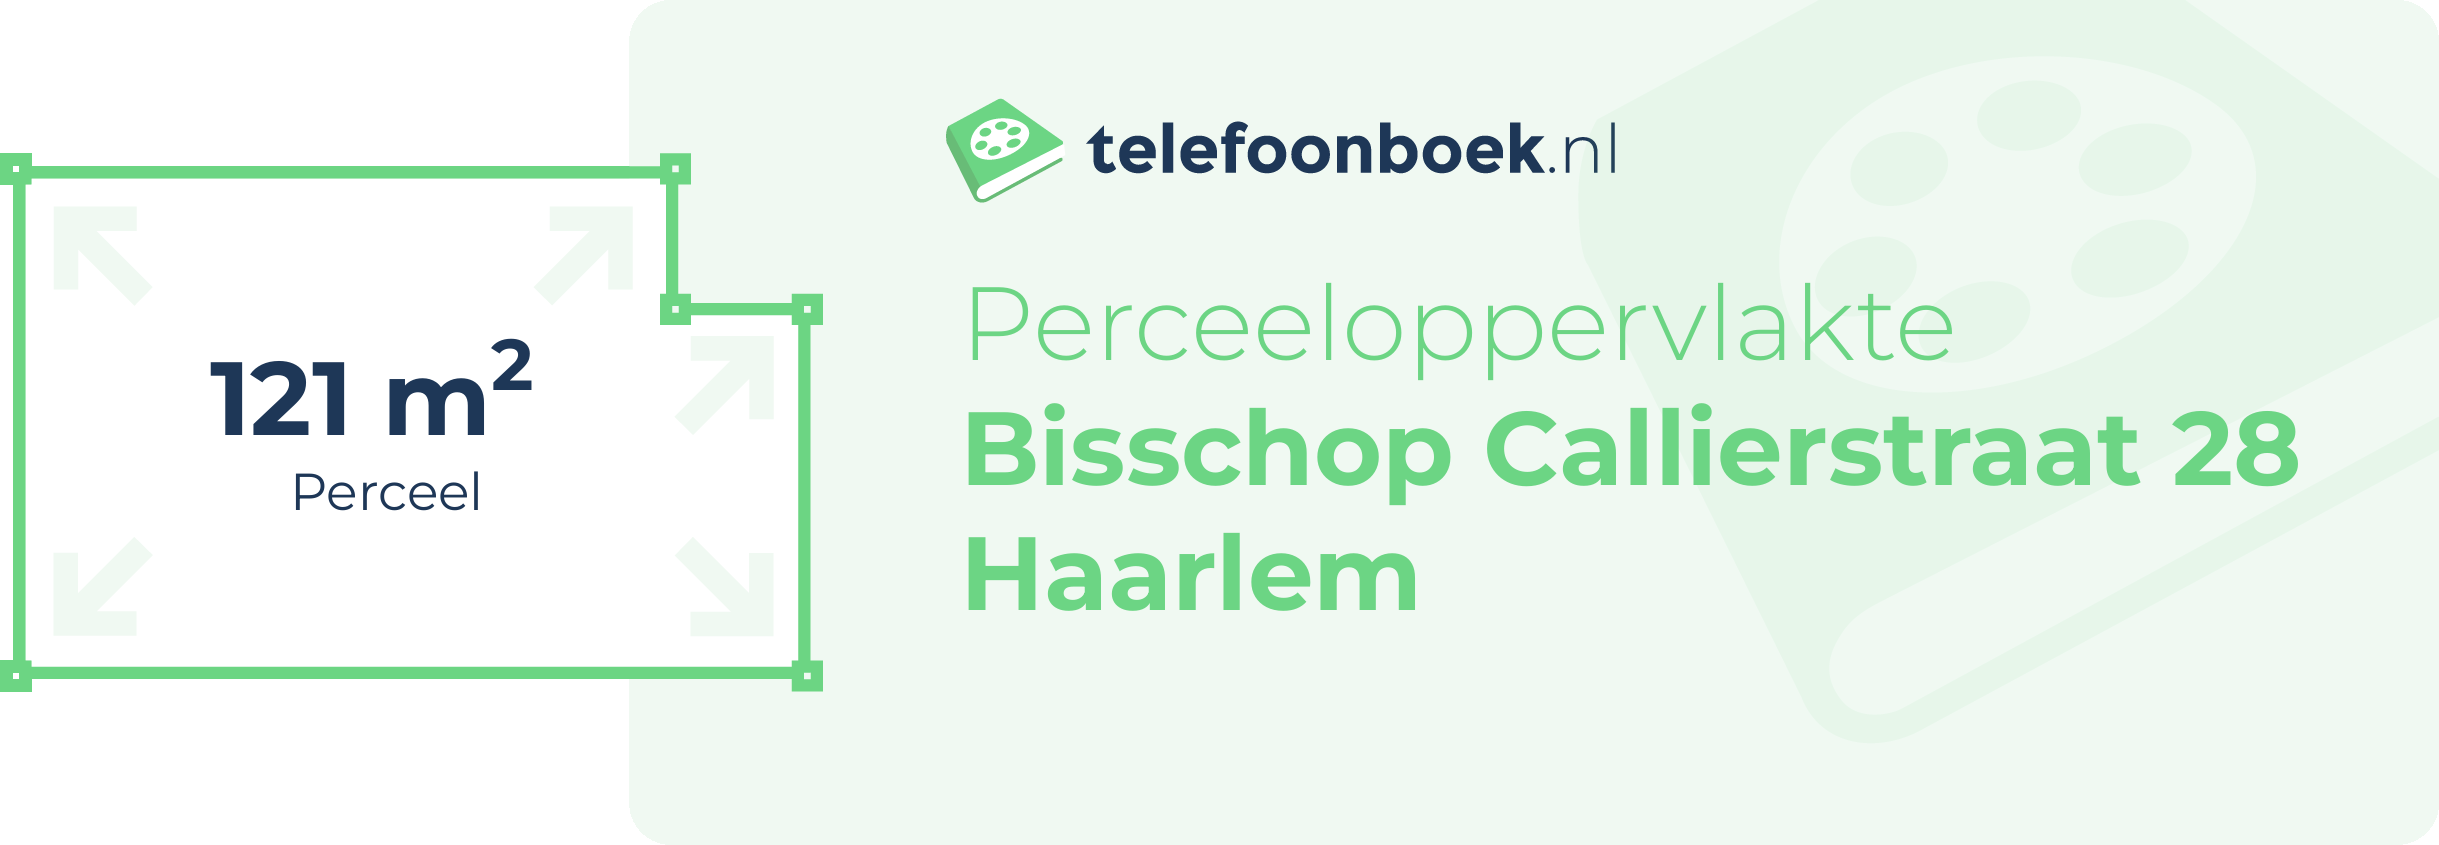 Perceeloppervlakte Bisschop Callierstraat 28 Haarlem